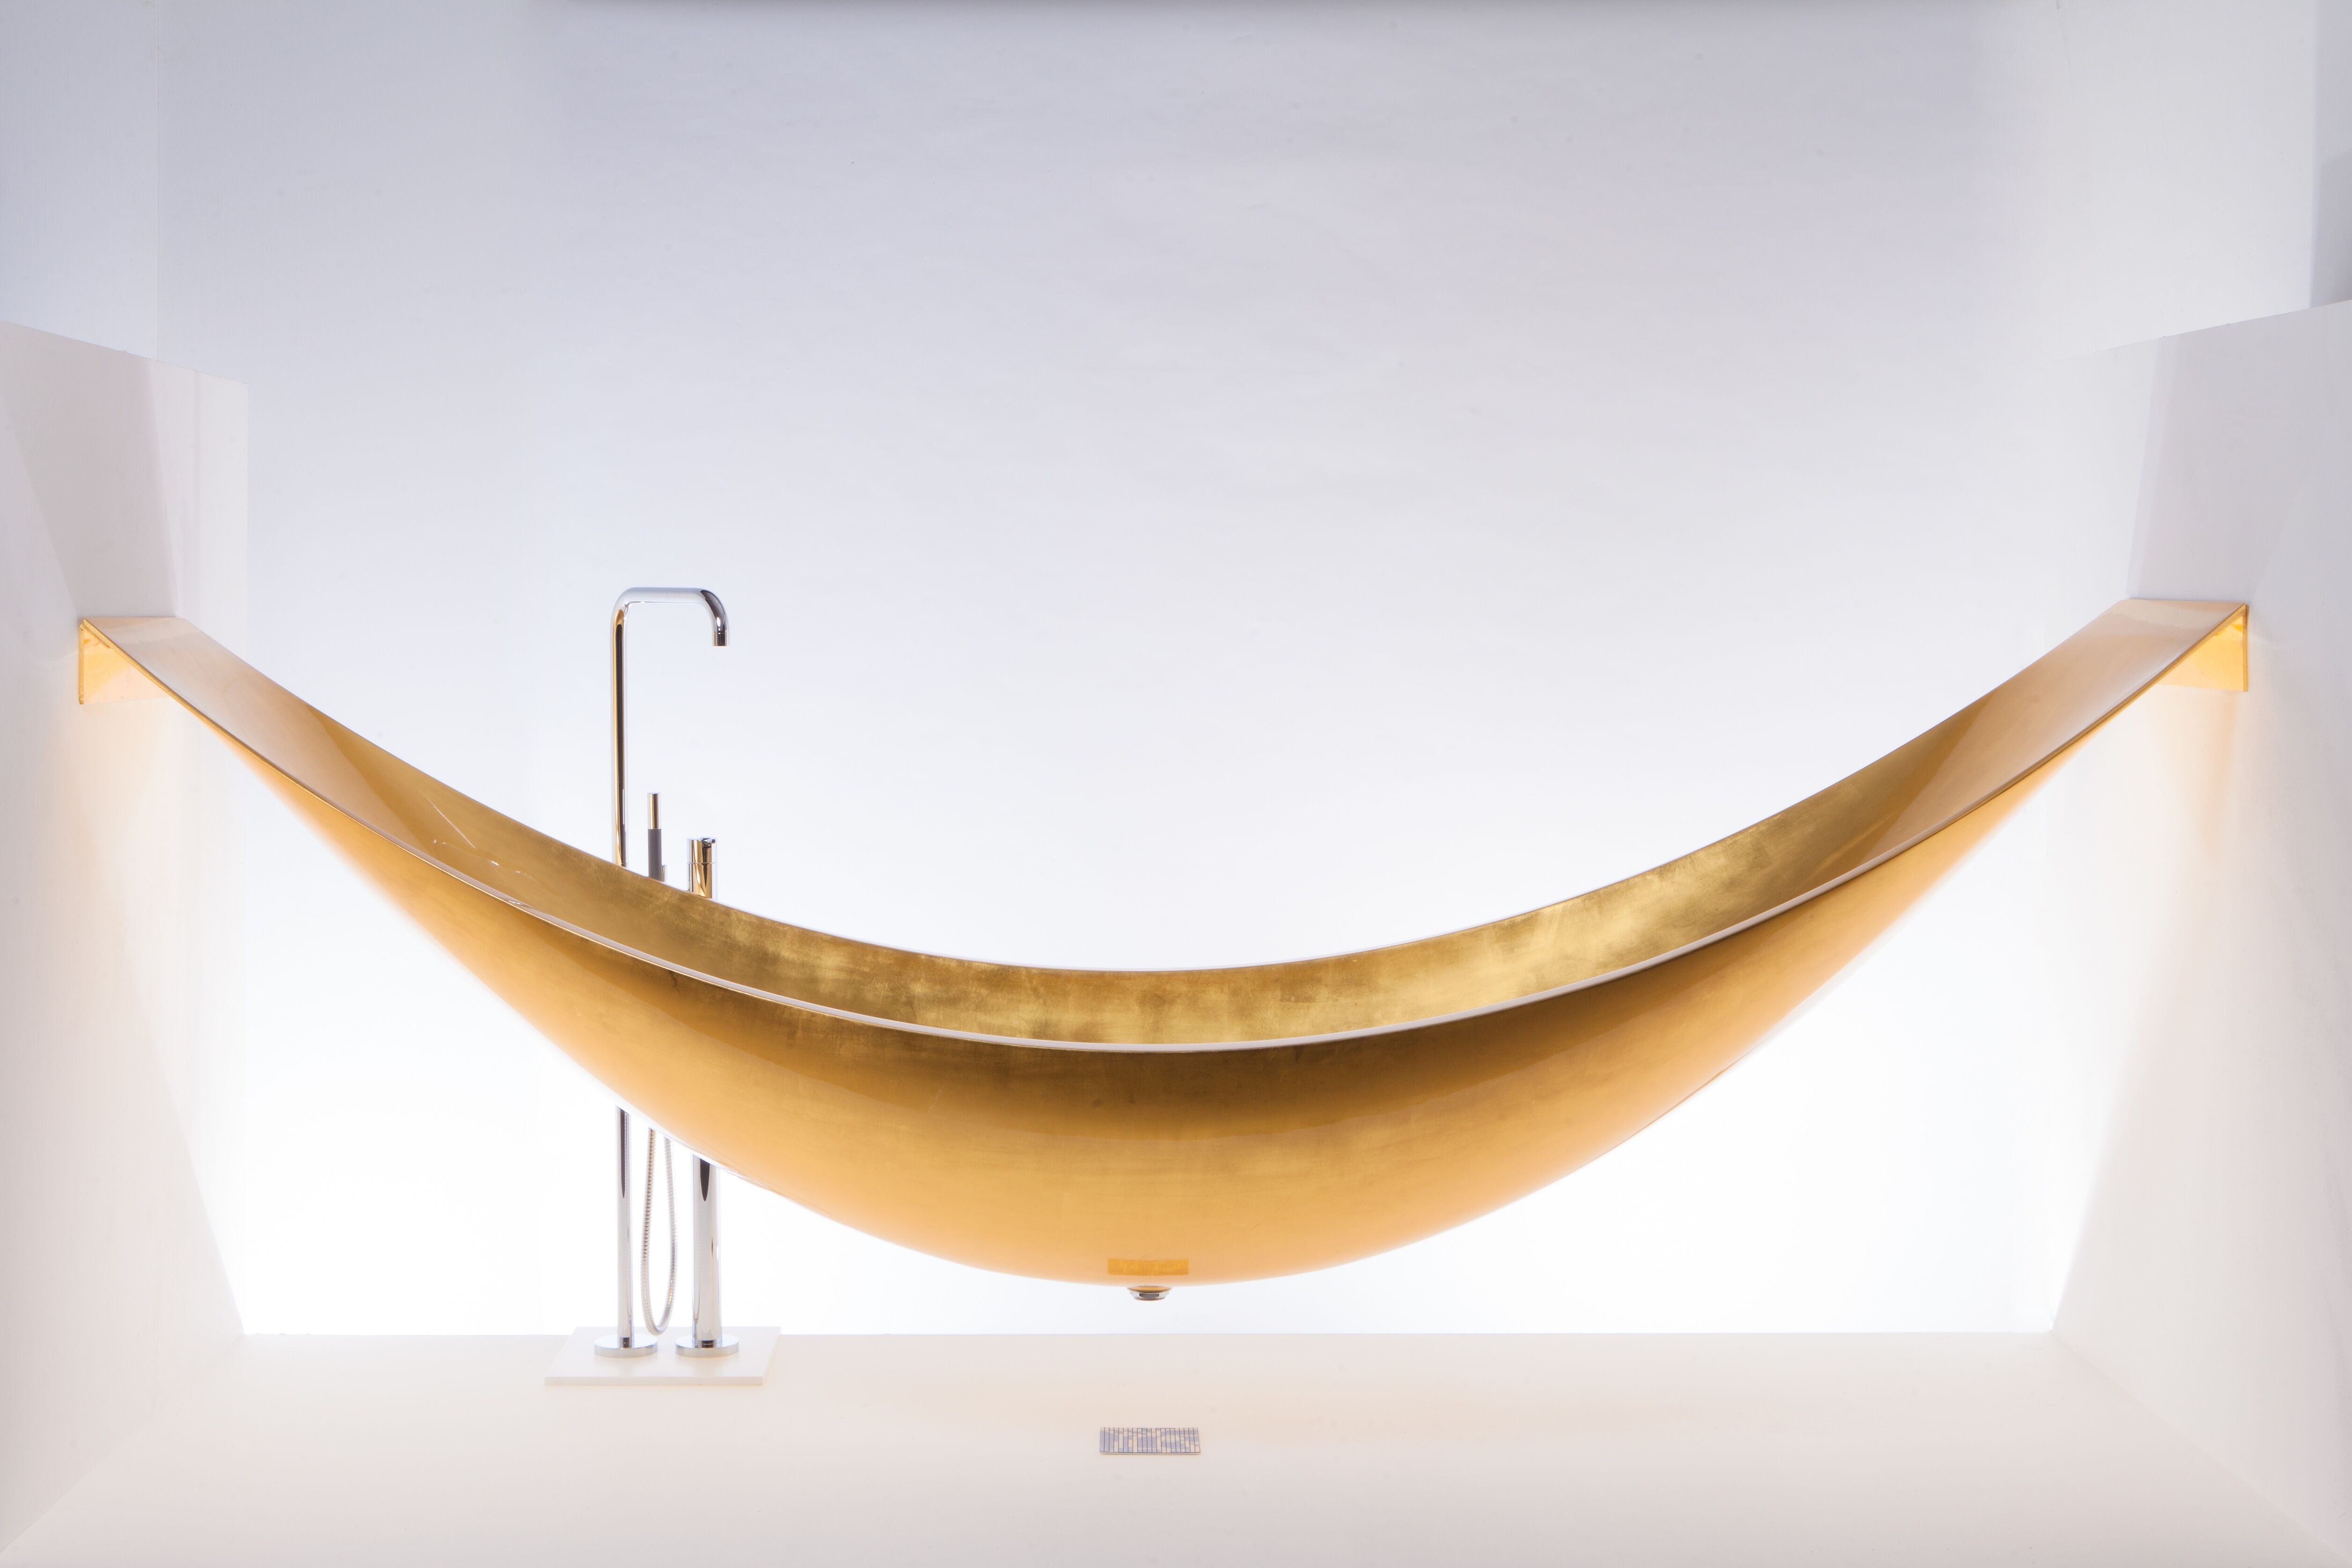 Gilded Hammock 24 Carot Gold Bath By, Splinter Works Hammock Bathtub